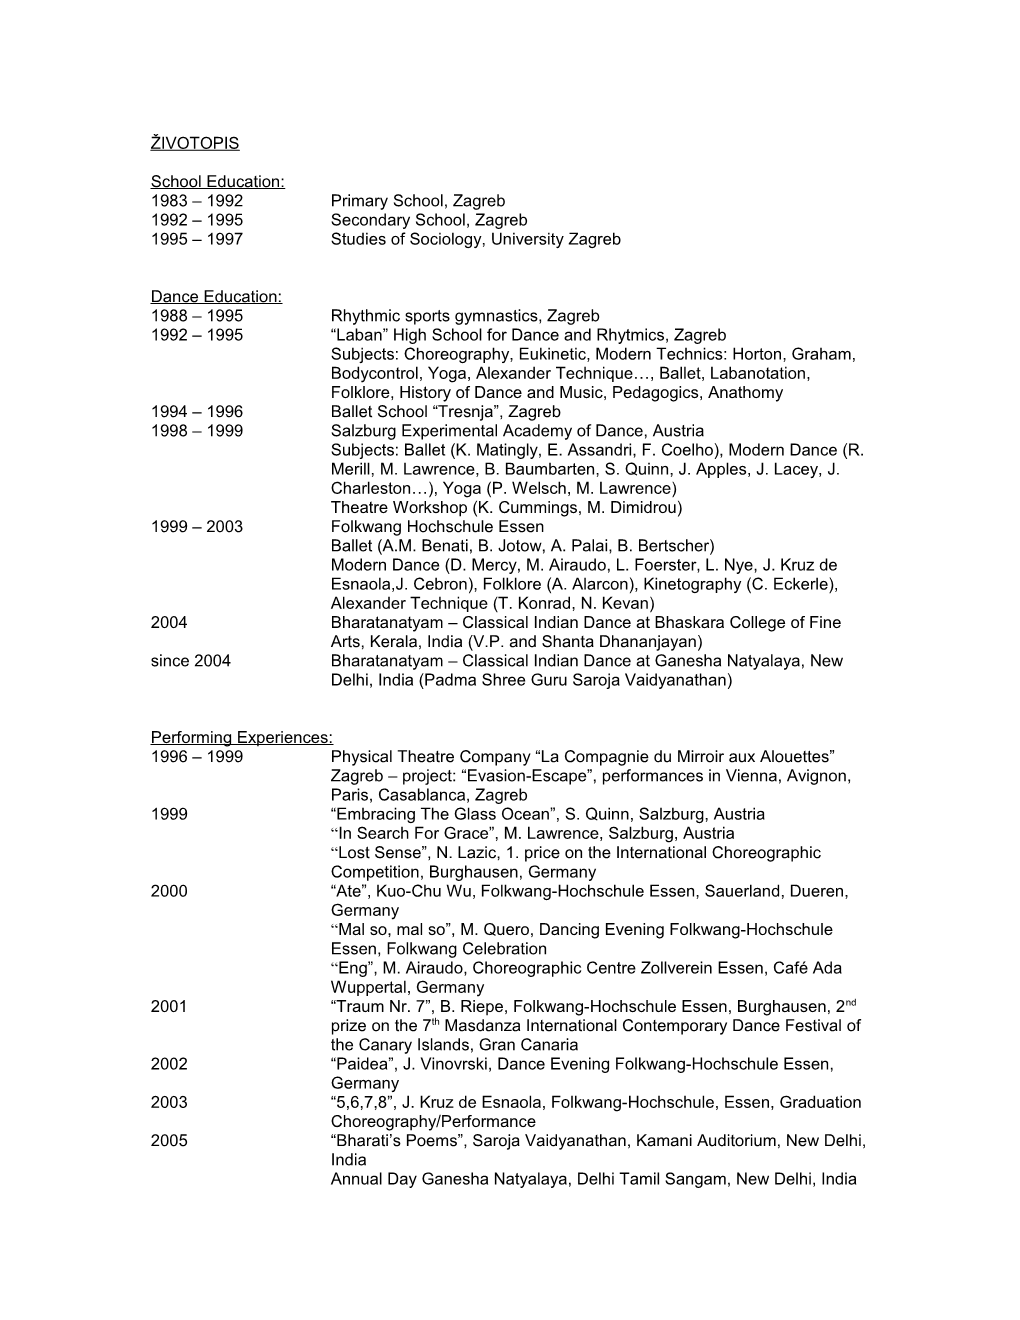 1995 1997 Studies of Sociology, University Zagreb